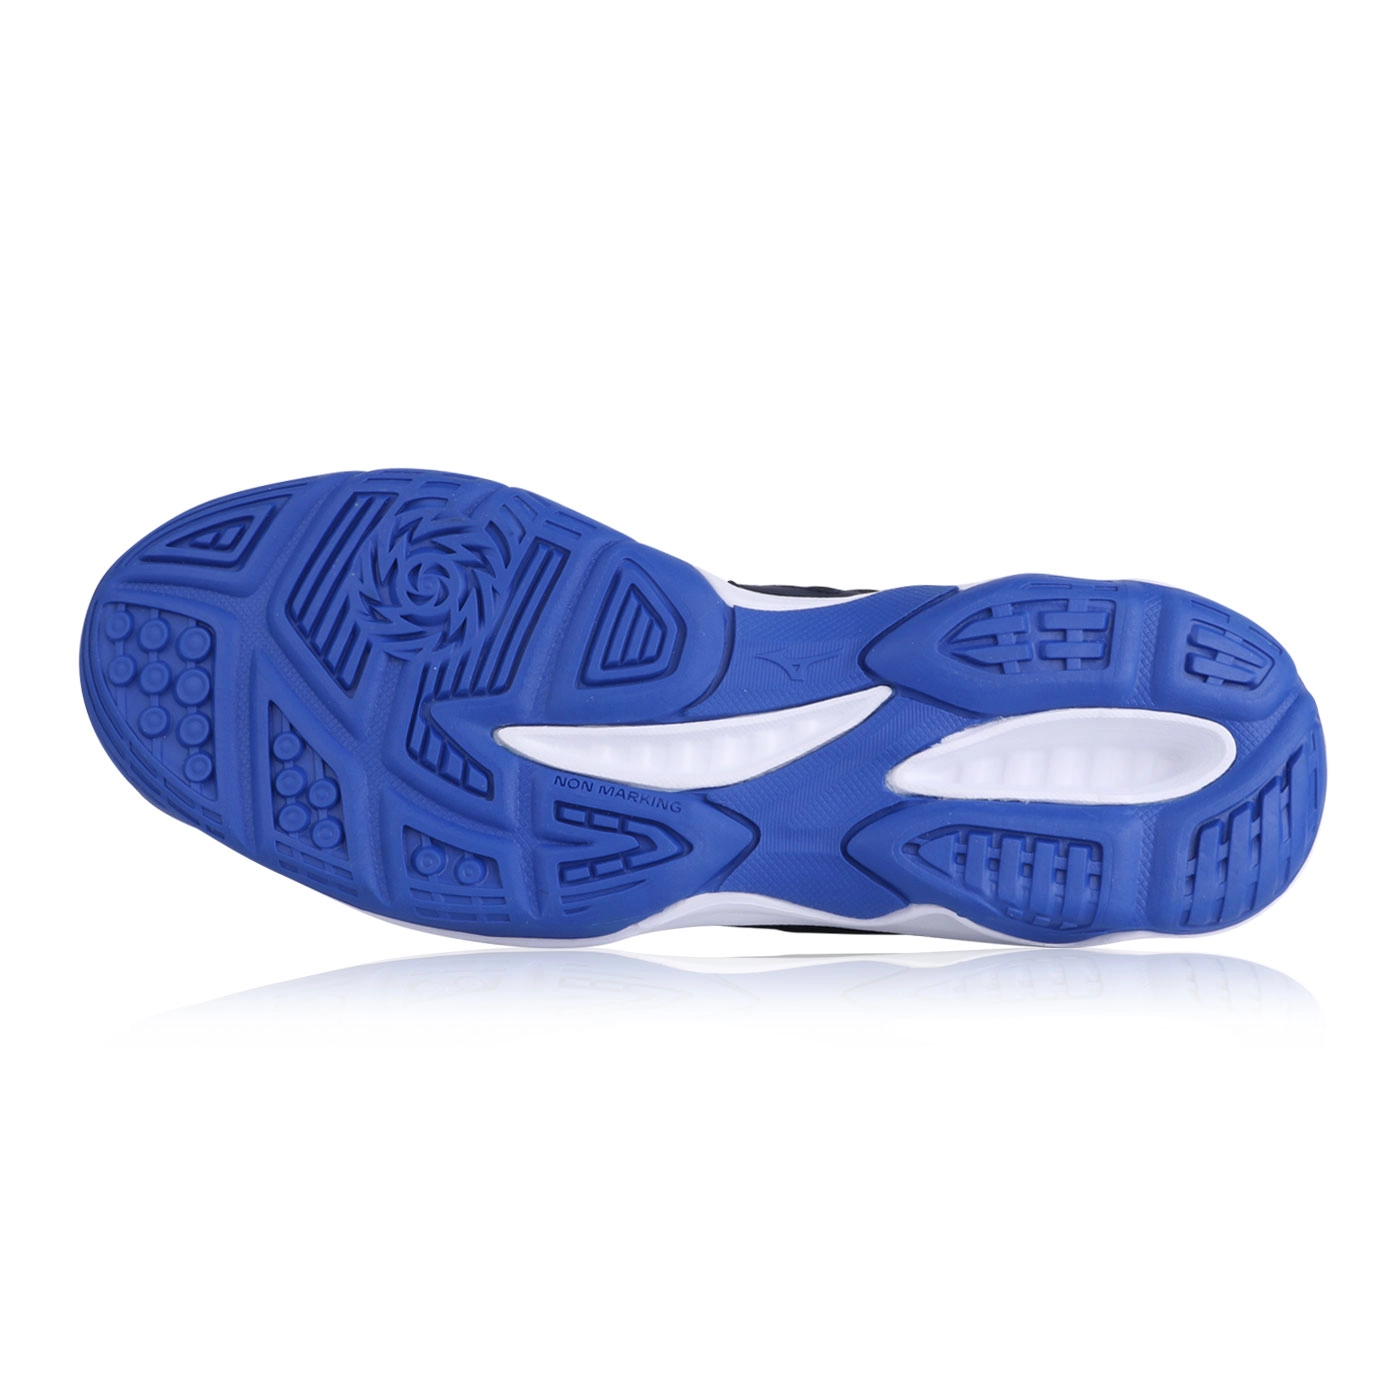 Giày cầu lông Mizuno cao cấp Dynablitz - Bạc tím xanh